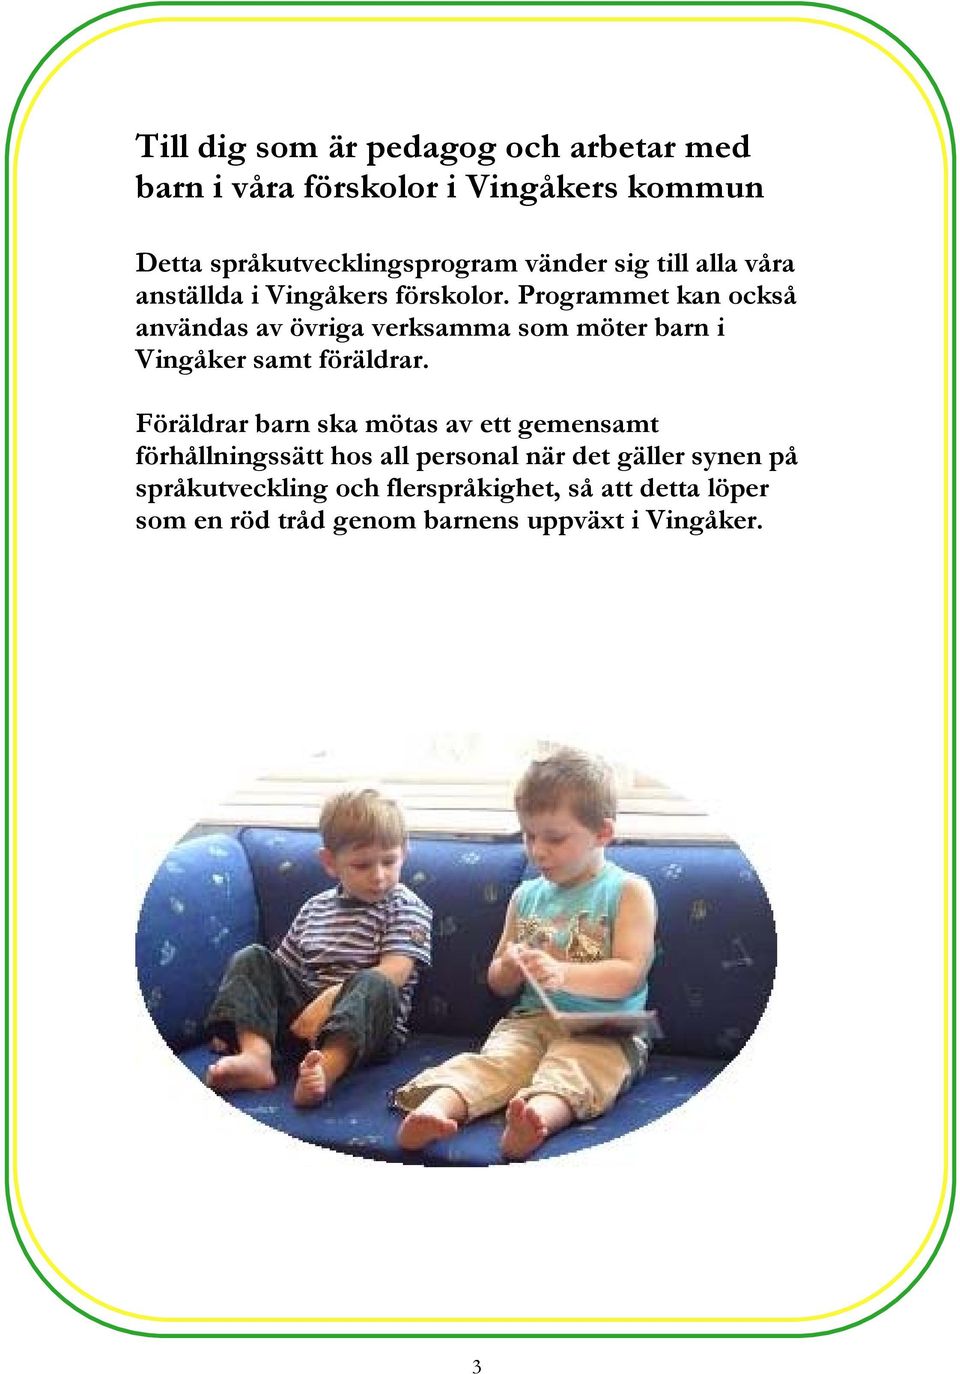 Programmet kan också användas av övriga verksamma som möter barn i Vingåker samt föräldrar.